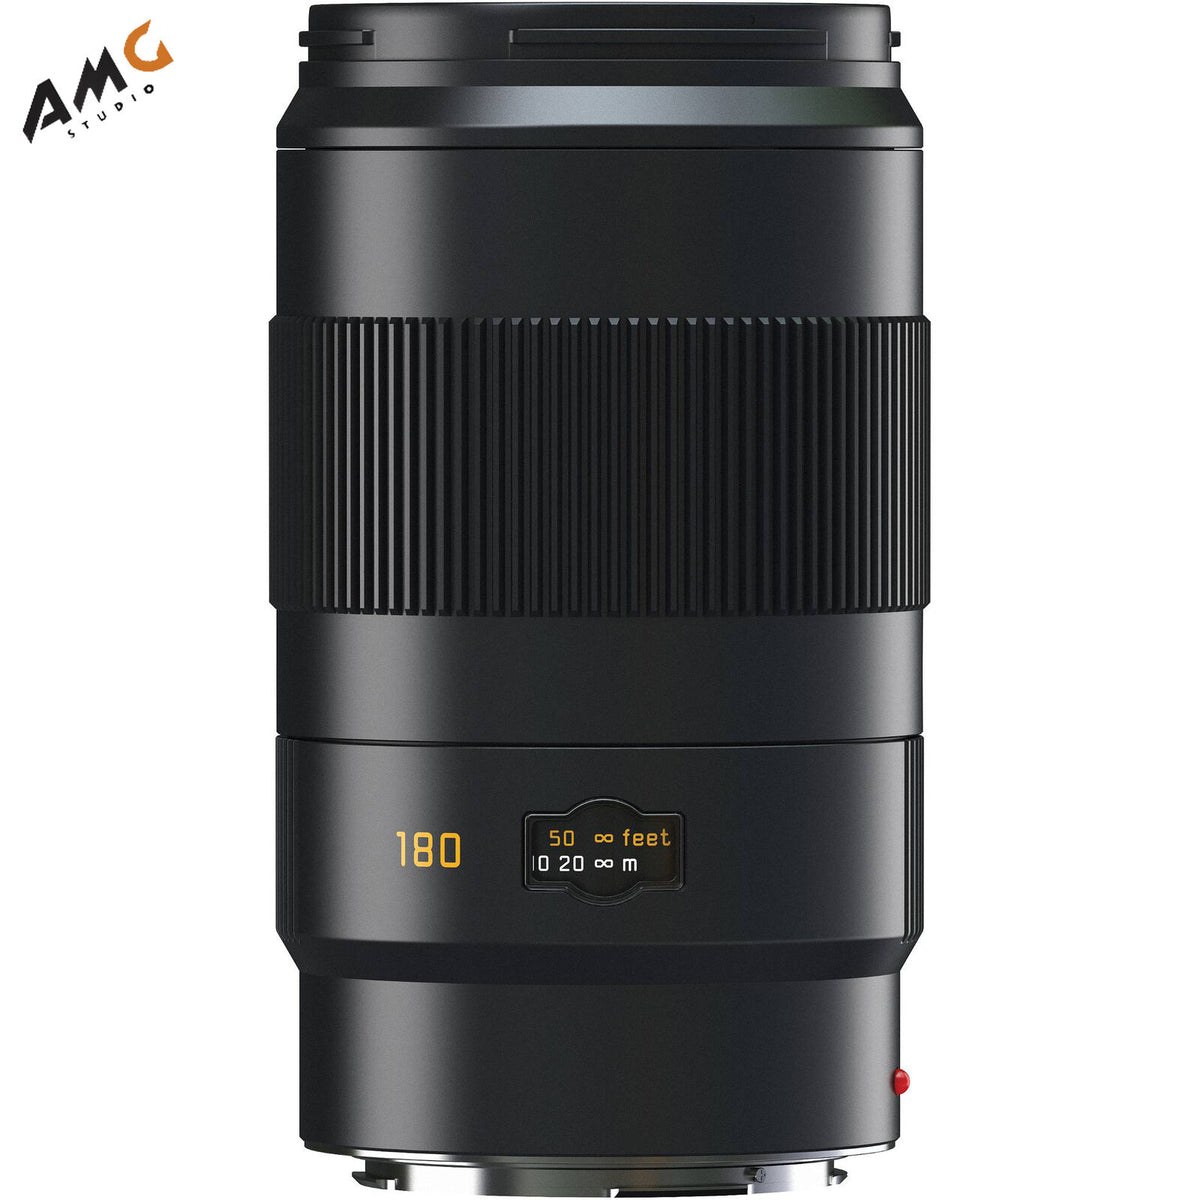 Leica APO-Tele-Elmar-S 180mm f/3.5 CS Autofocus Lens 11053 For Camera